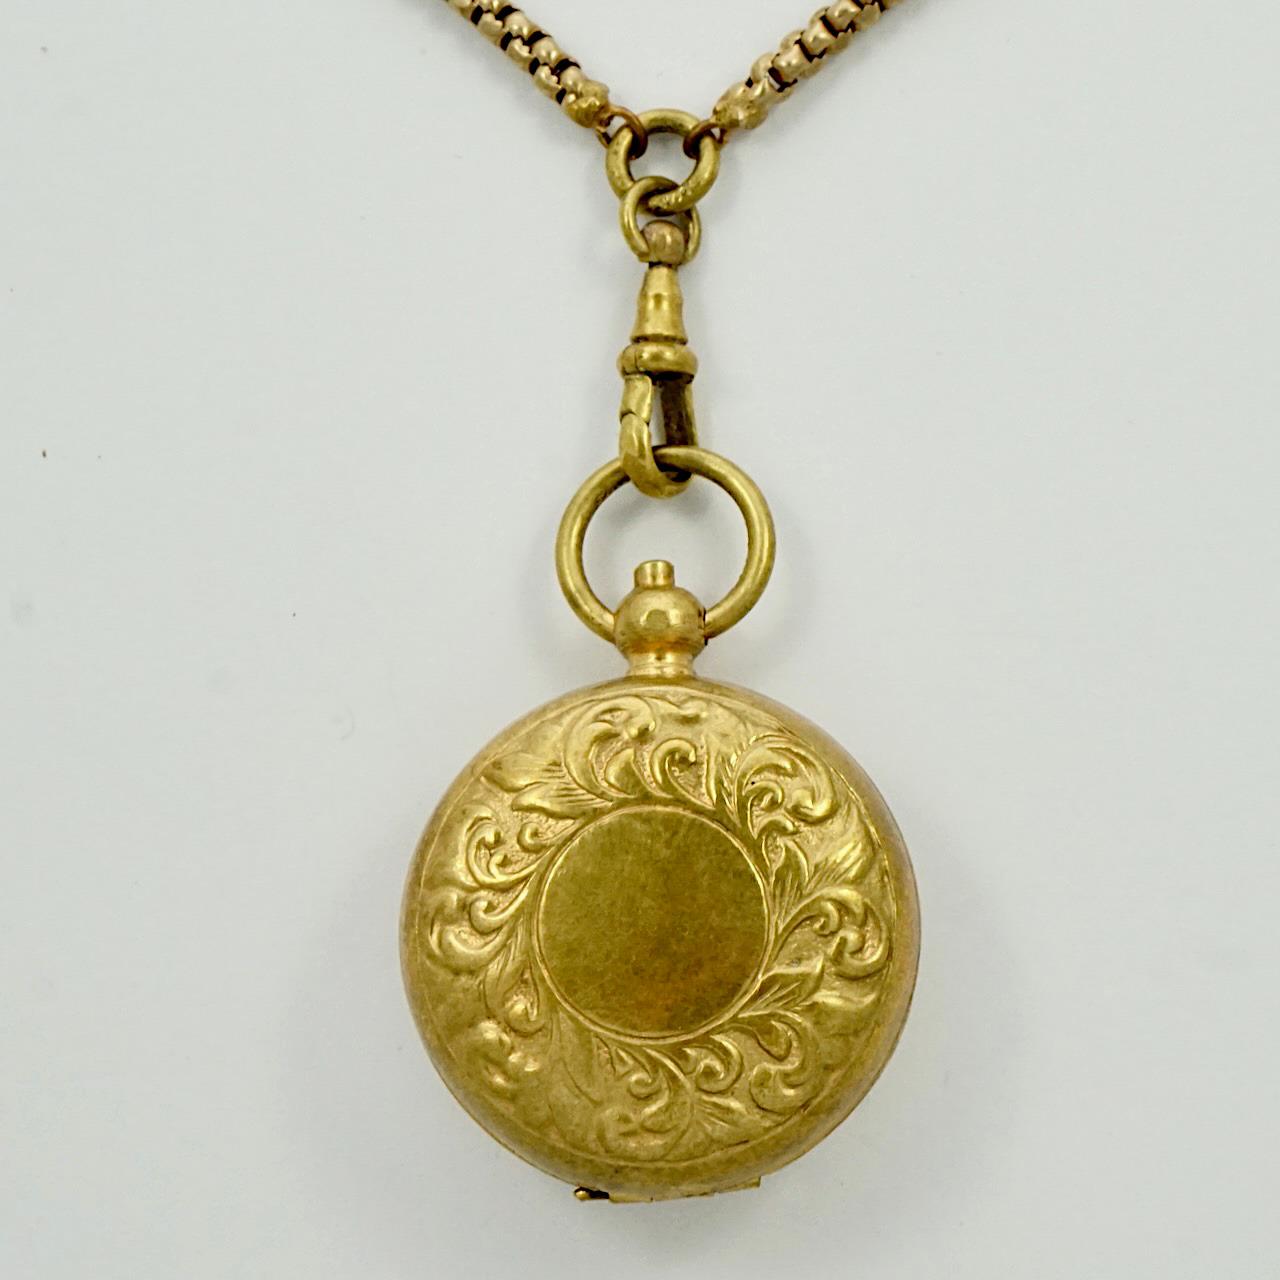 Longue chaîne de garde en métal doré à l'or fin antique avec clip pour chien, et pendentif porte-monnaie souverain en laiton. L'agrafe de chien aurait été utilisée à l'origine pour tenir une montre de poche. Le porte-monnaie est décoré à l'avant et